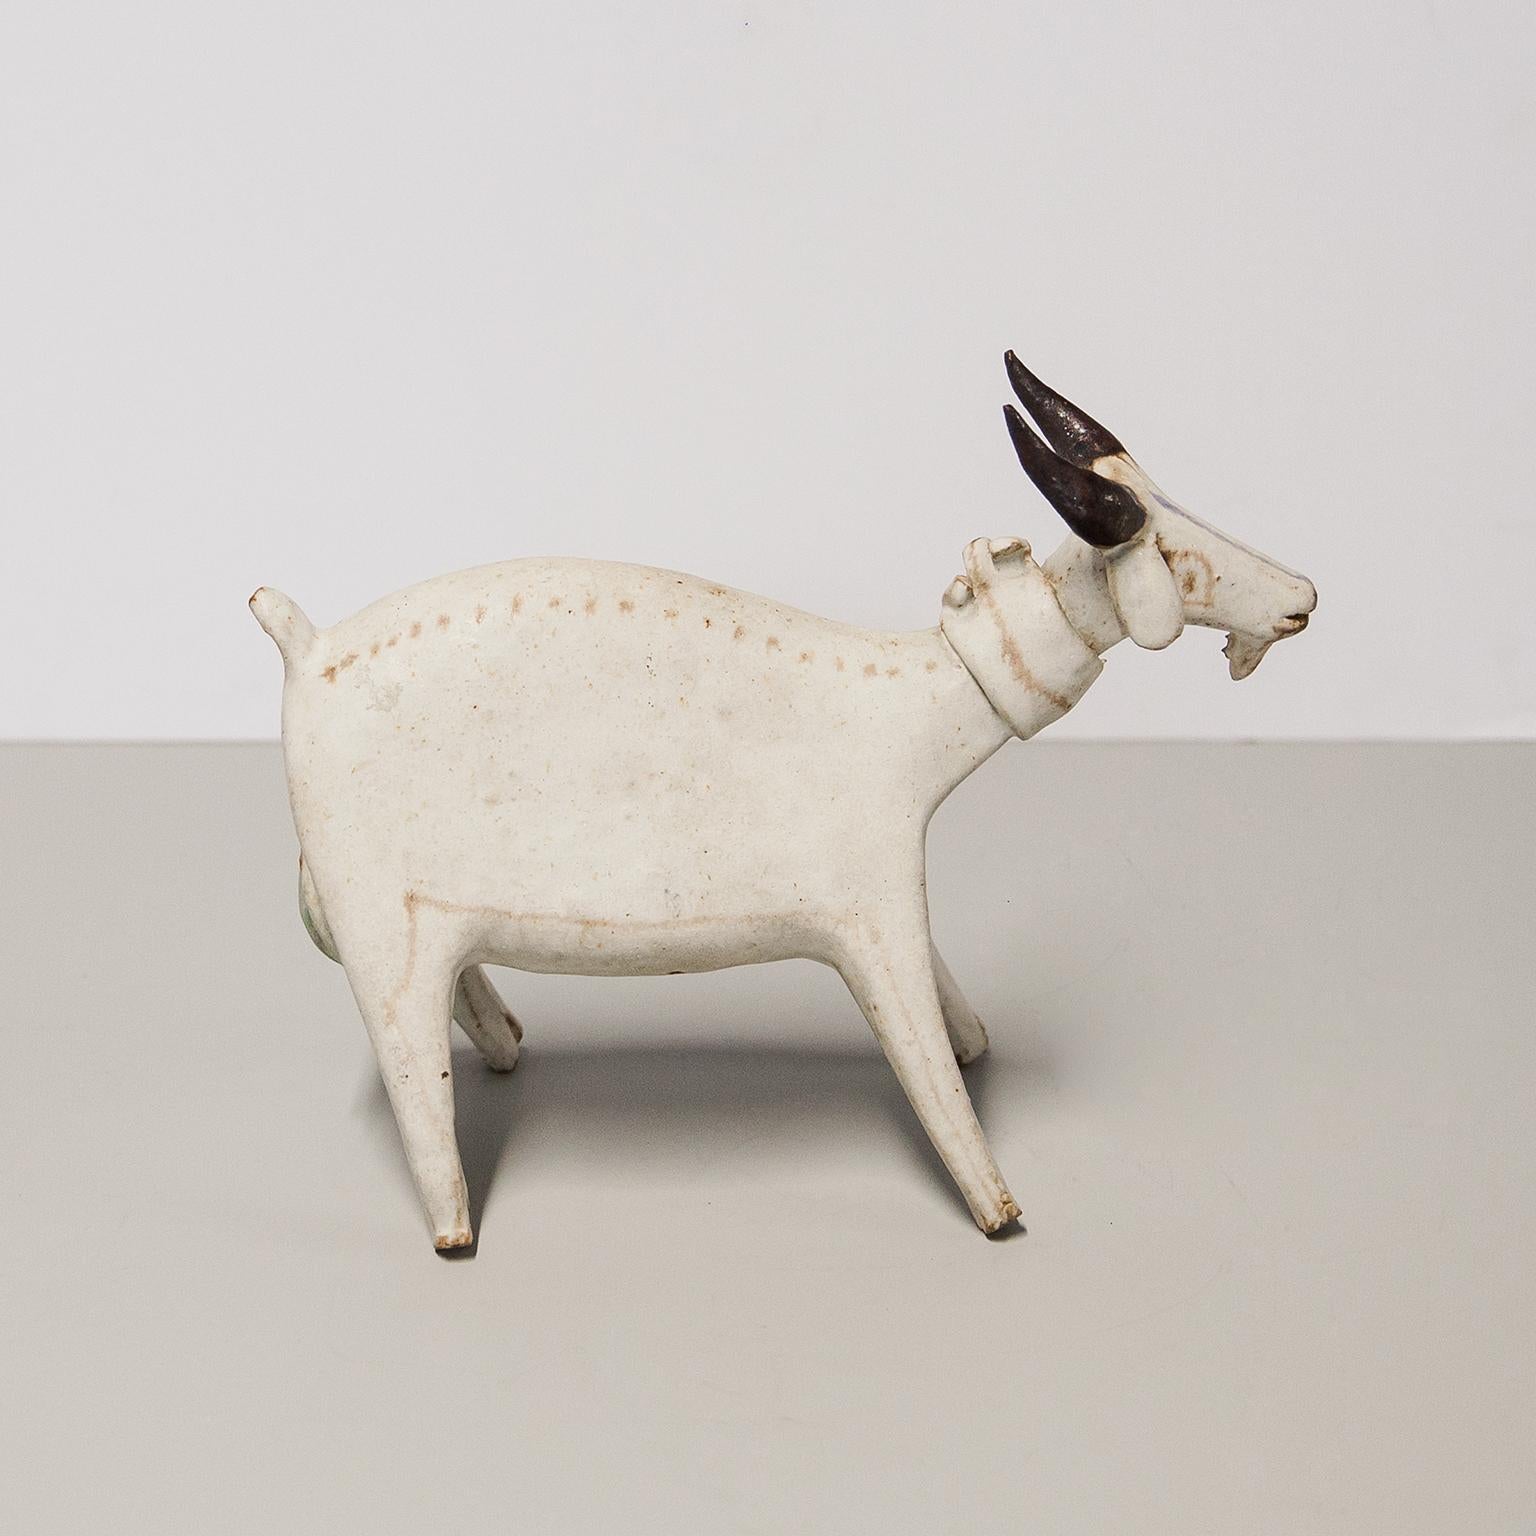 Stehender Löwe aus cremeweiß glasierter Keramik von Bruno Gambone aus den 1970er Jahren, auf der Unterseite signiert Gambone Italy.
Sehr selten zu finden in dieser großen Ziege Version und in ausgezeichnetem Zustand.